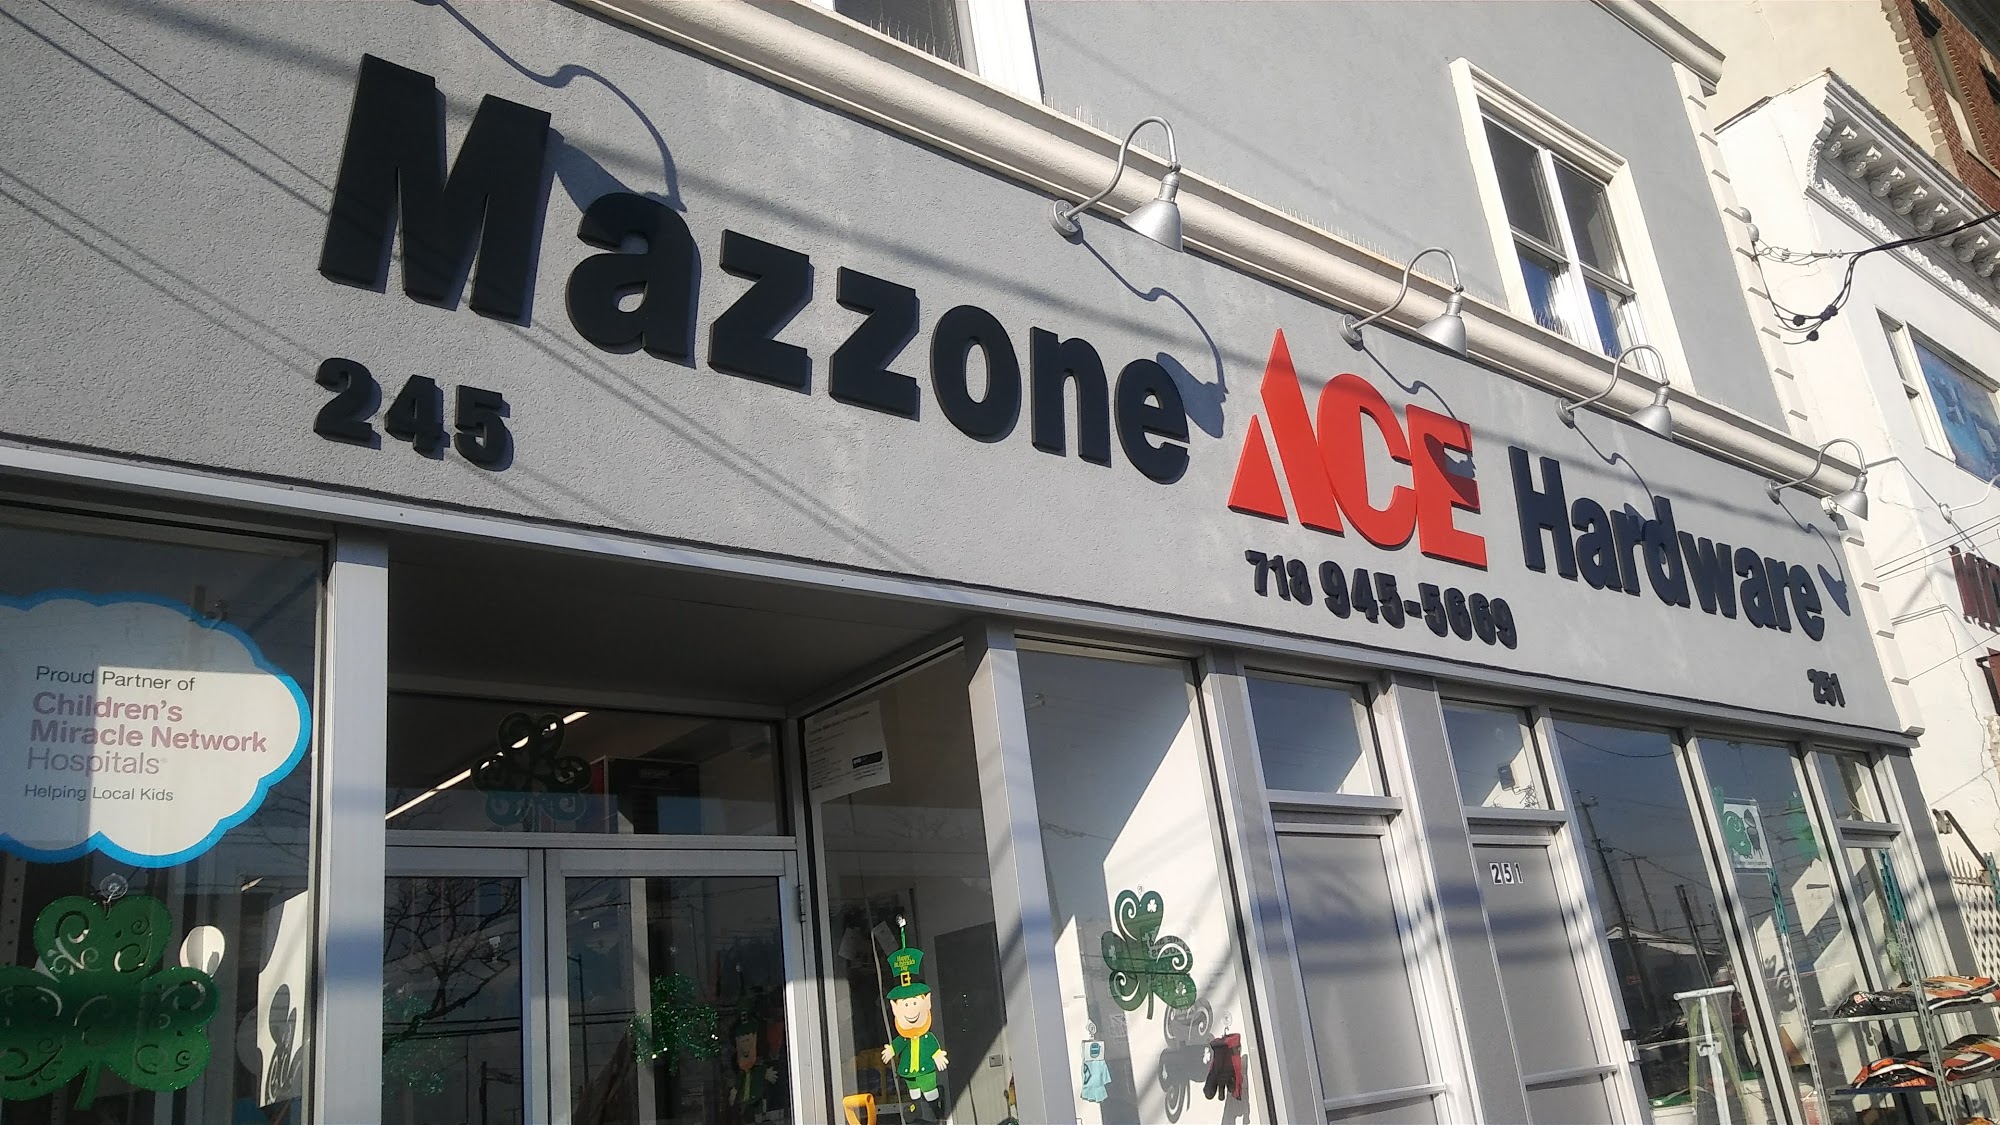 Mazzone Ace Hardware